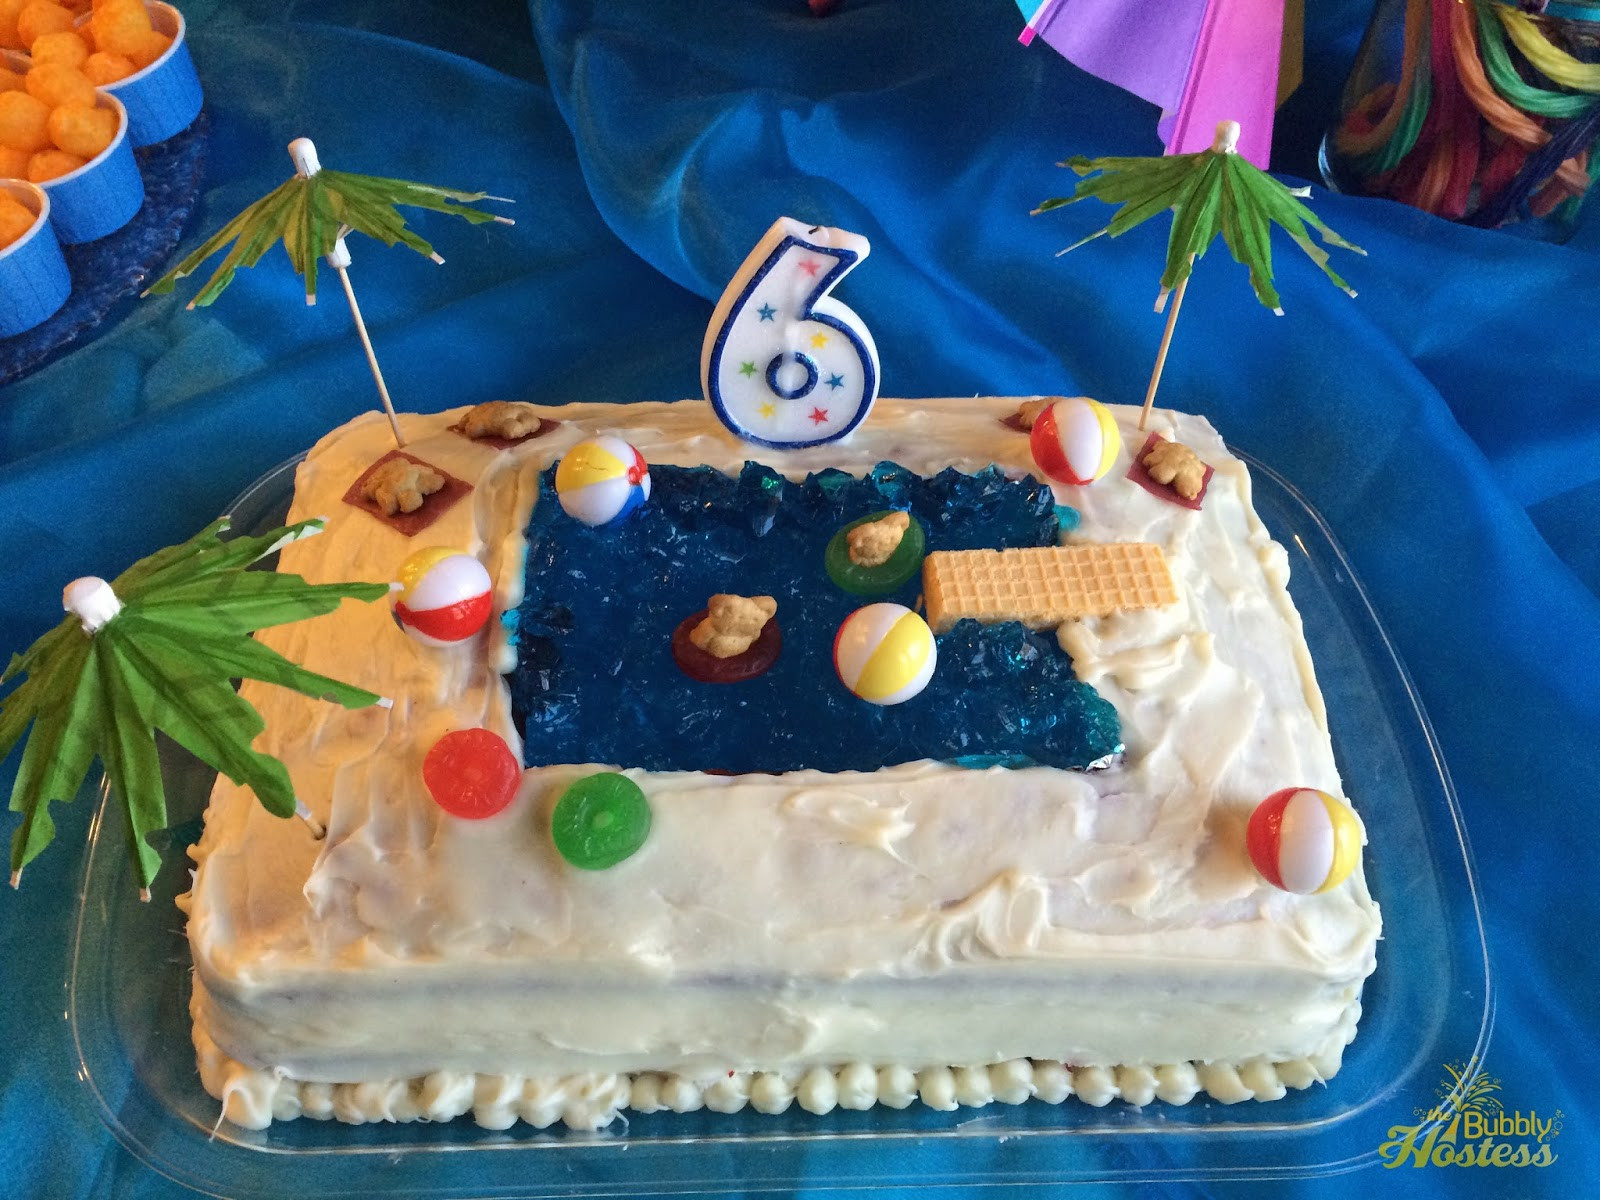 Pool Party Birthday Cakes
 The Bubbly Hostess Birthday Pool Party